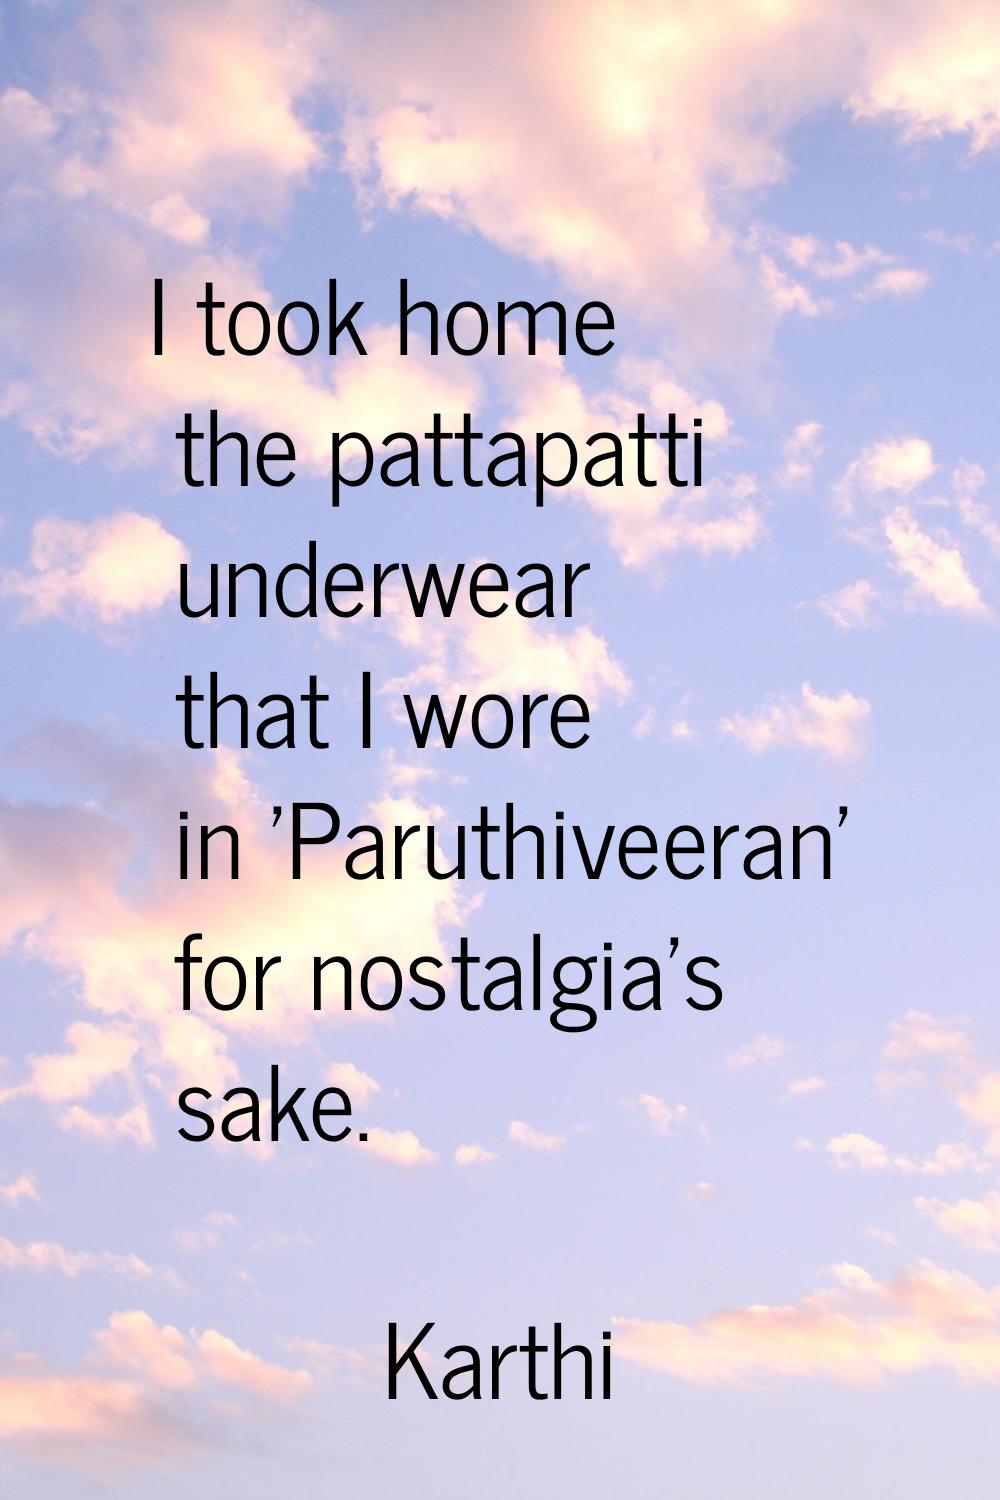 I took home the pattapatti underwear that I wore in 'Paruthiveeran' for nostalgia's sake.